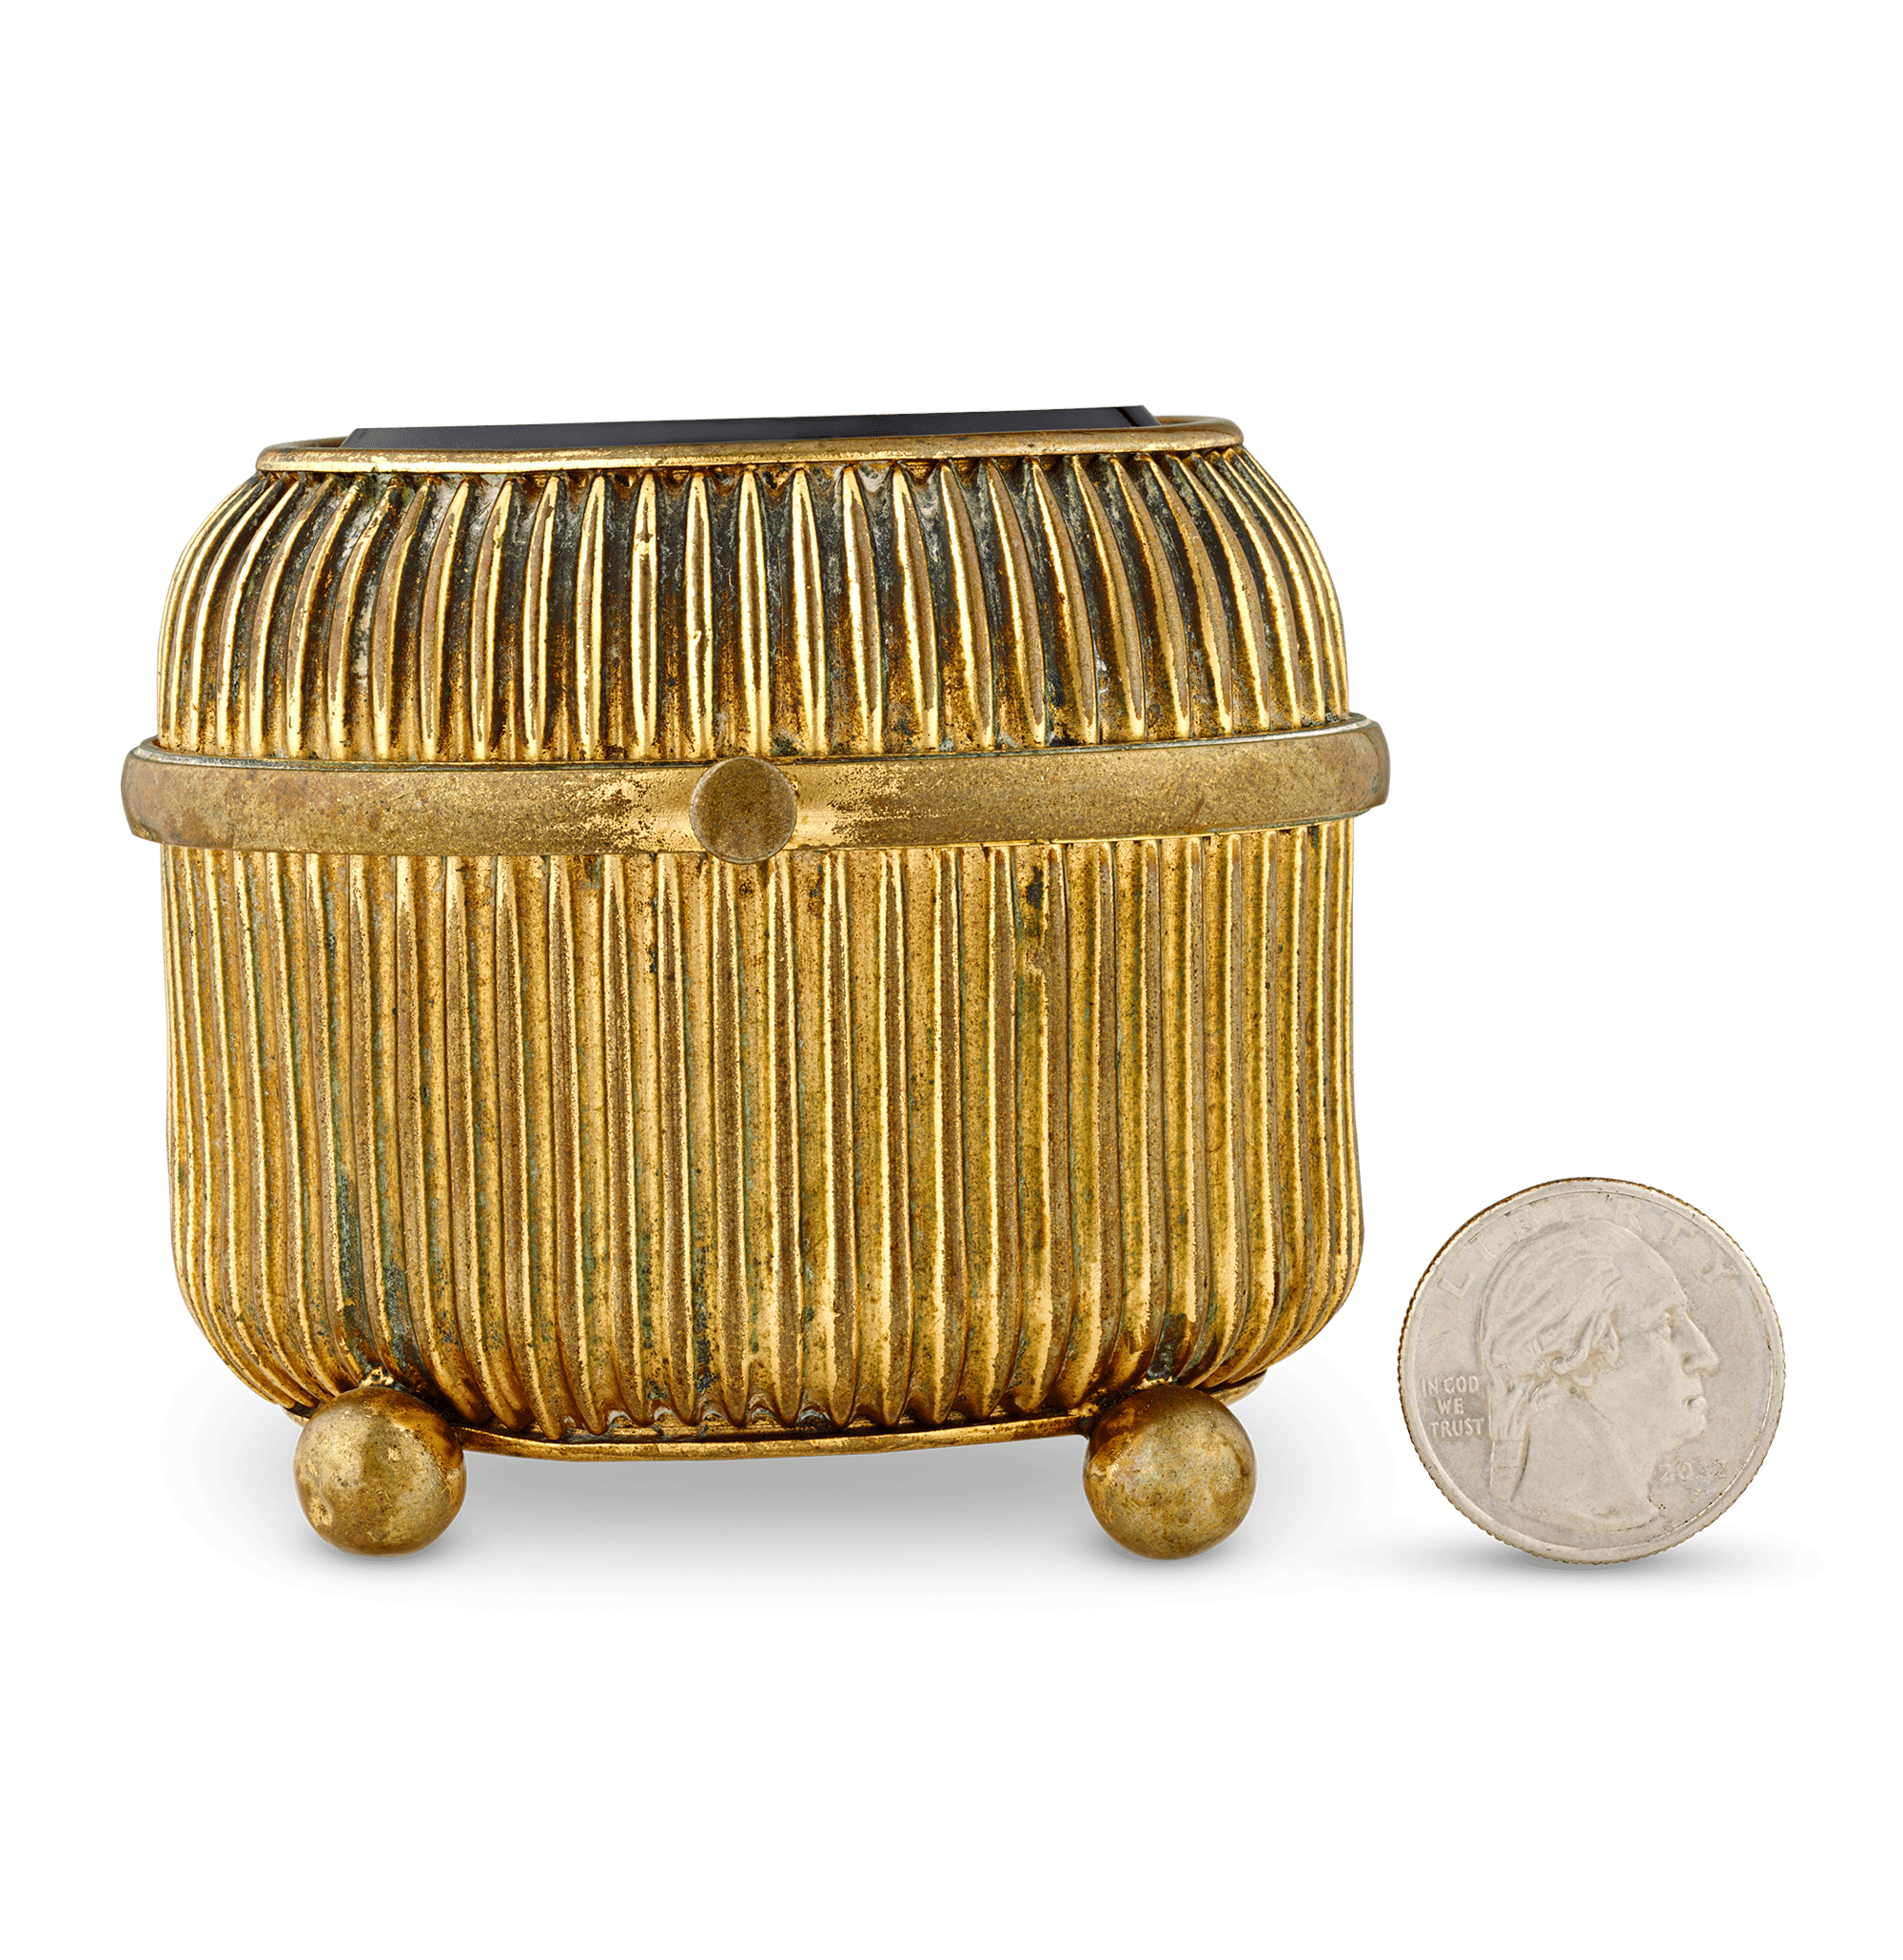 Pliny's Doves Micromosaic Box